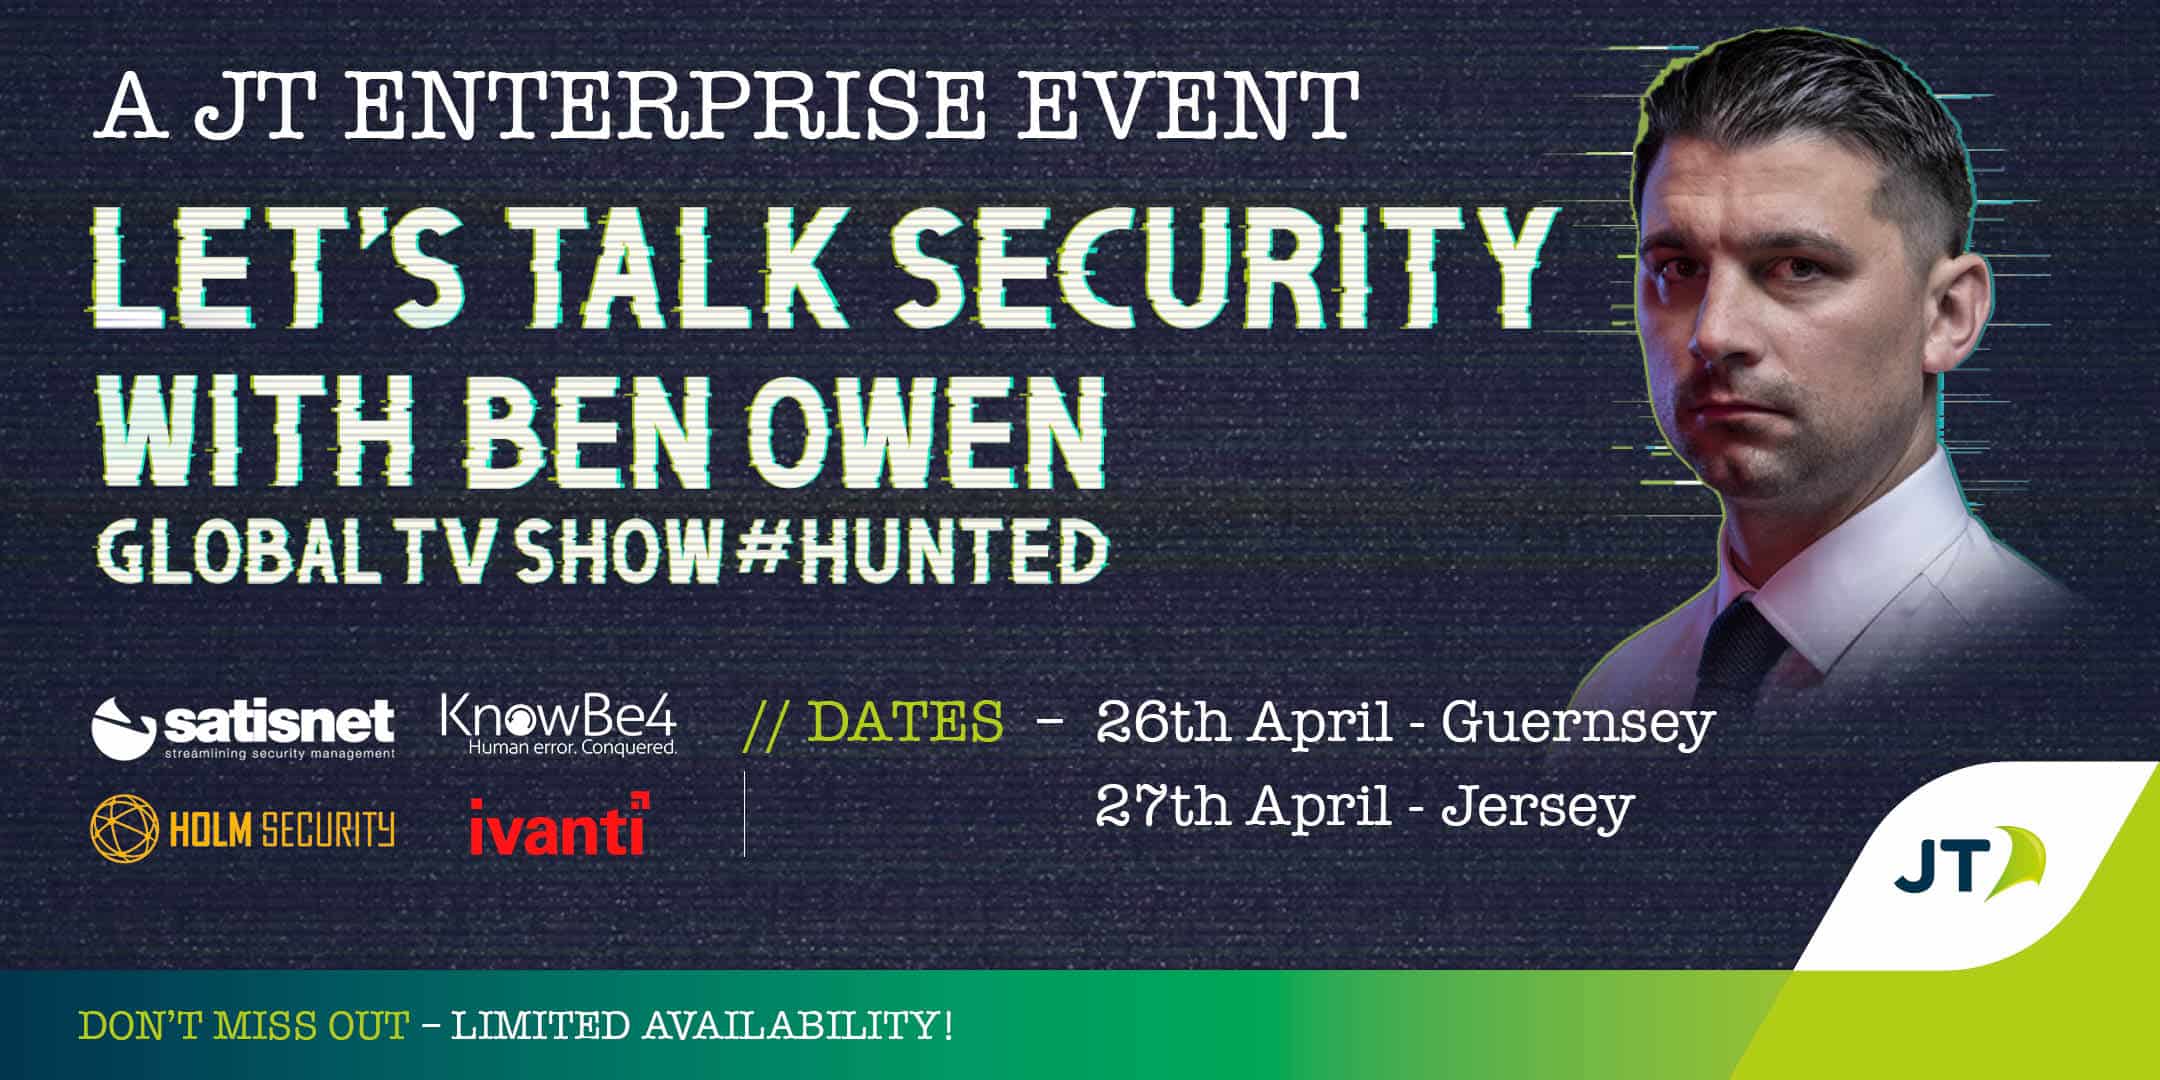 Let’s Talk Security – A JT Enterprise Event